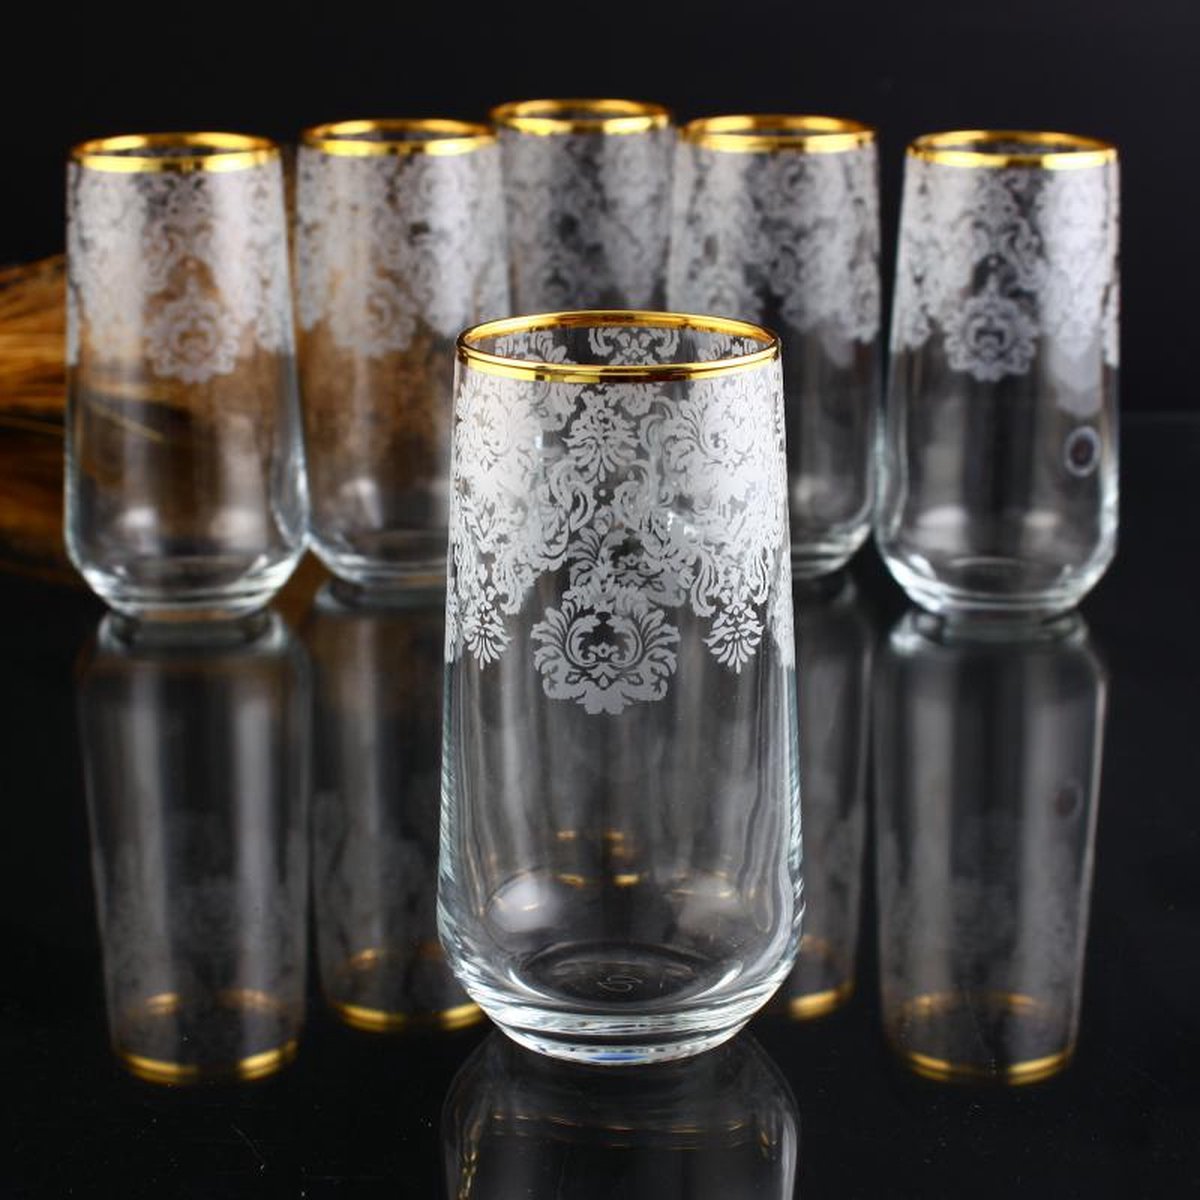 Abka Kristal - Helena Goud - Longdrinkglas set (470 ml) - met de hand versierd met 24-karaats goud - 6 stuks